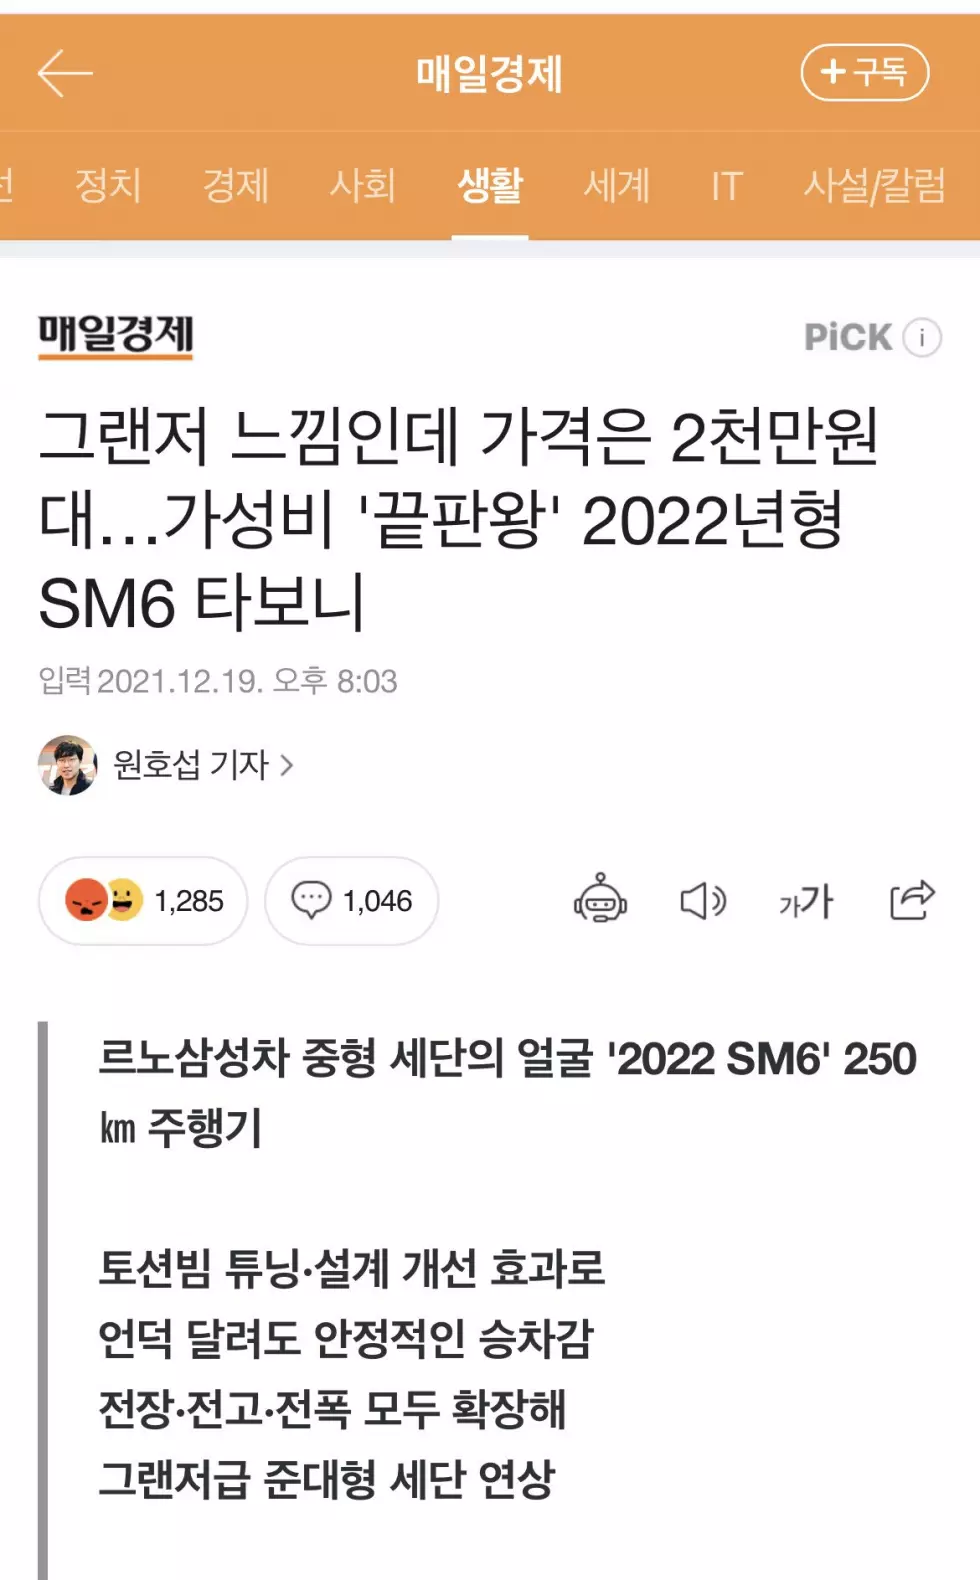 그랜져급 승차감이라는 SM6 뉴스 댓글 후기